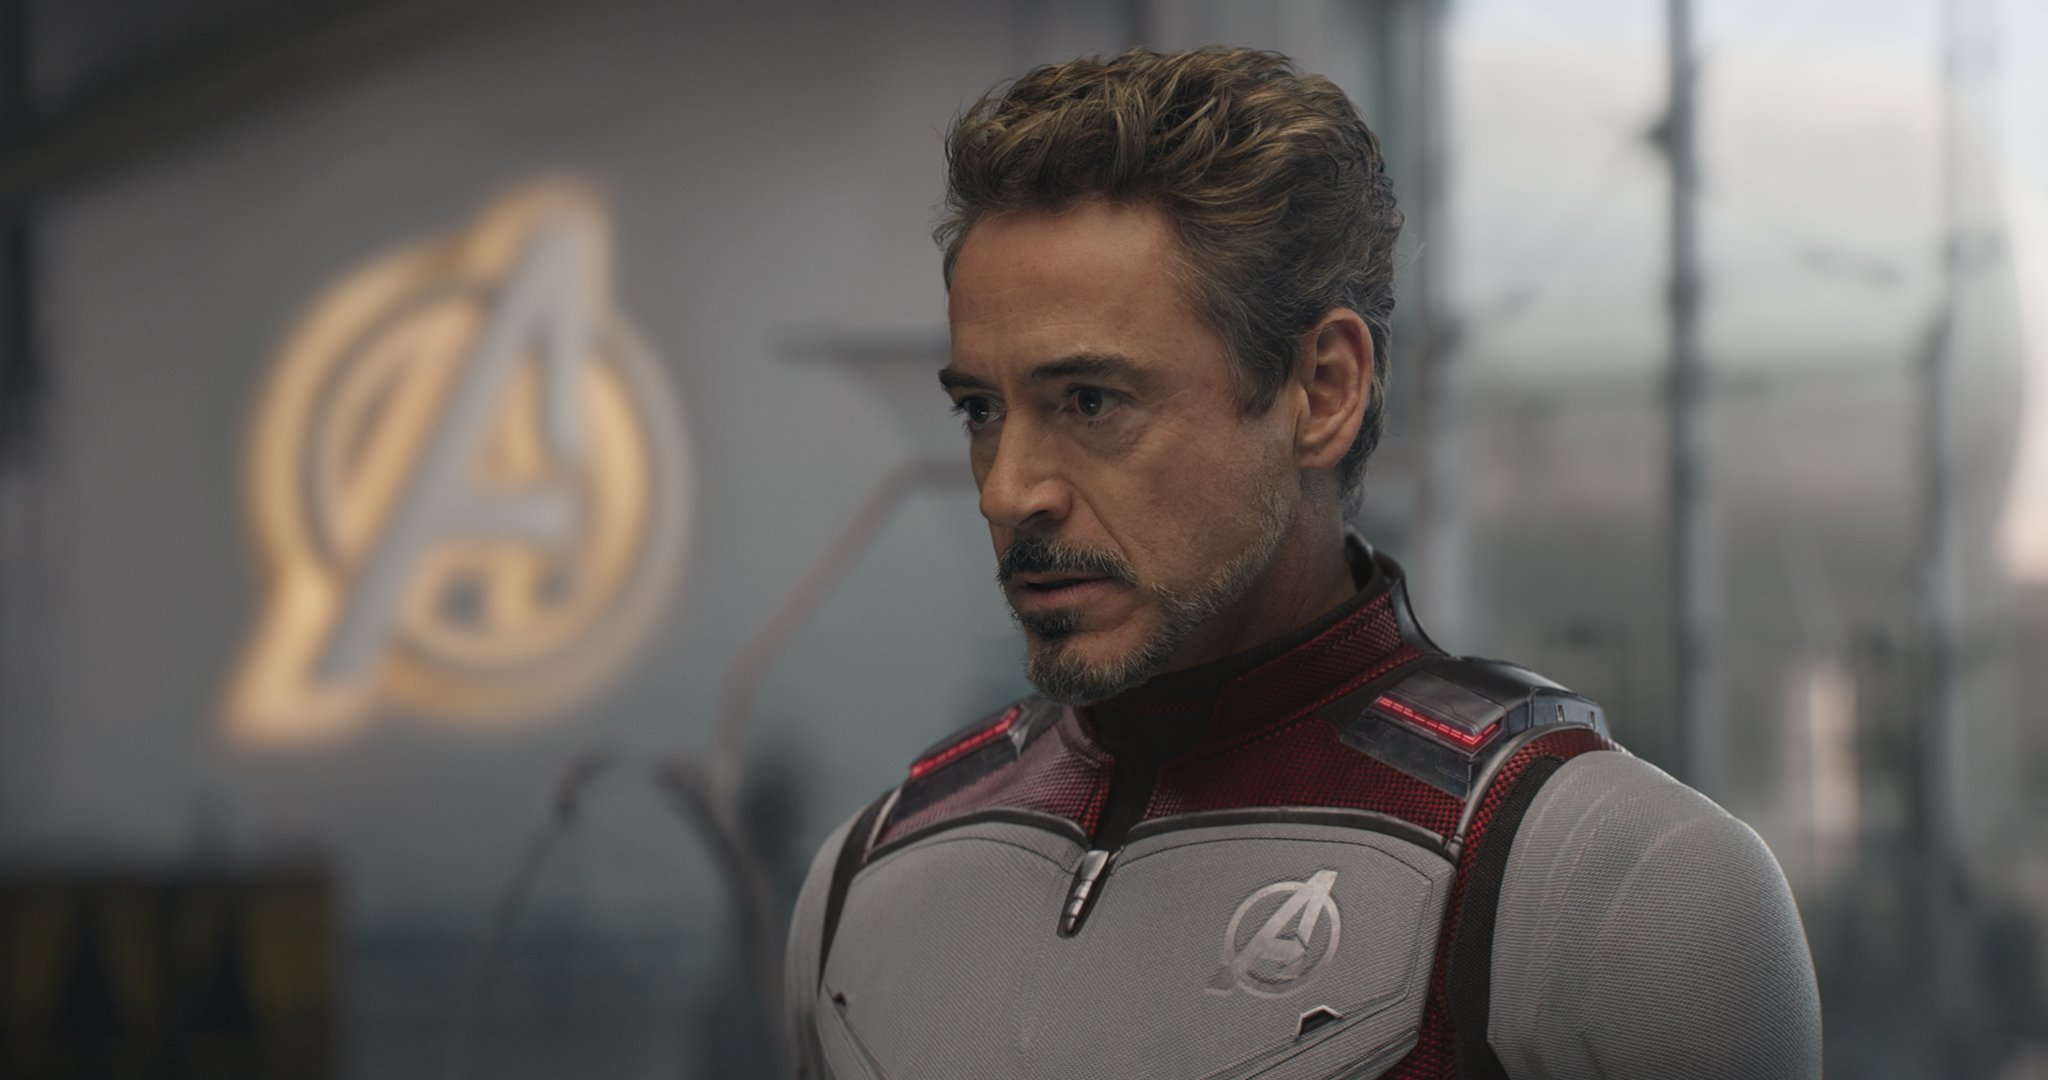 Marvel's Avengers Endgame: Robert Downey, Jr. as Tony Stark